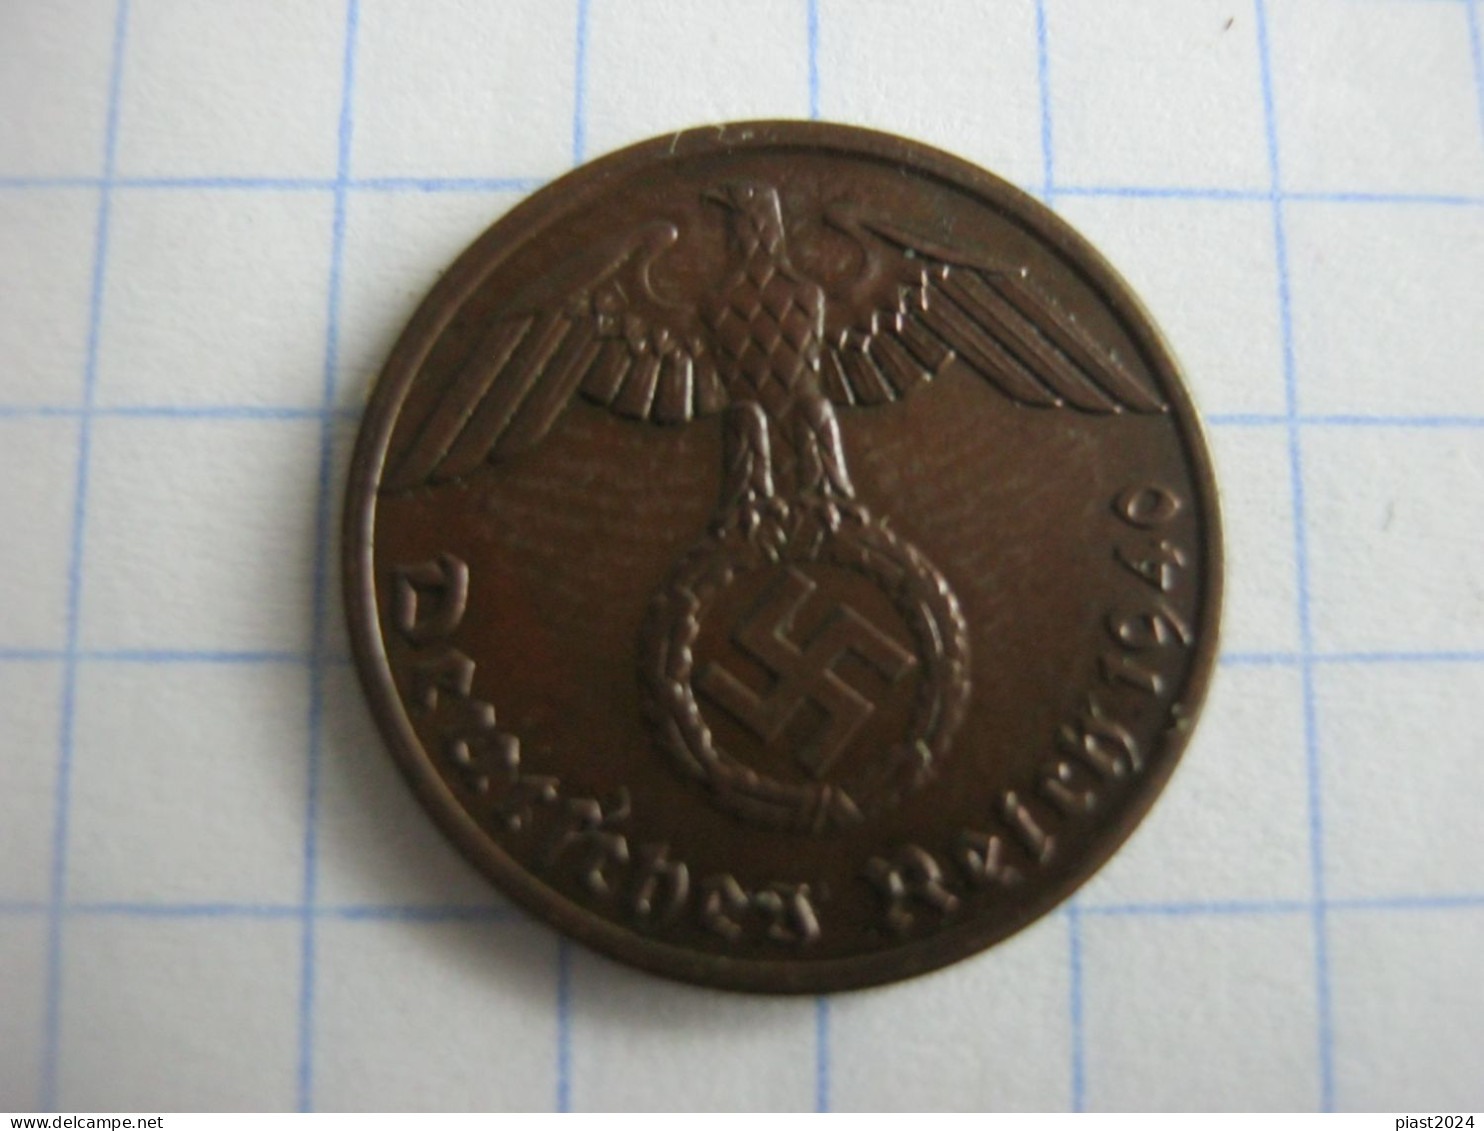 Germany 1 Reichspfennig 1940 A - 1 Reichspfennig